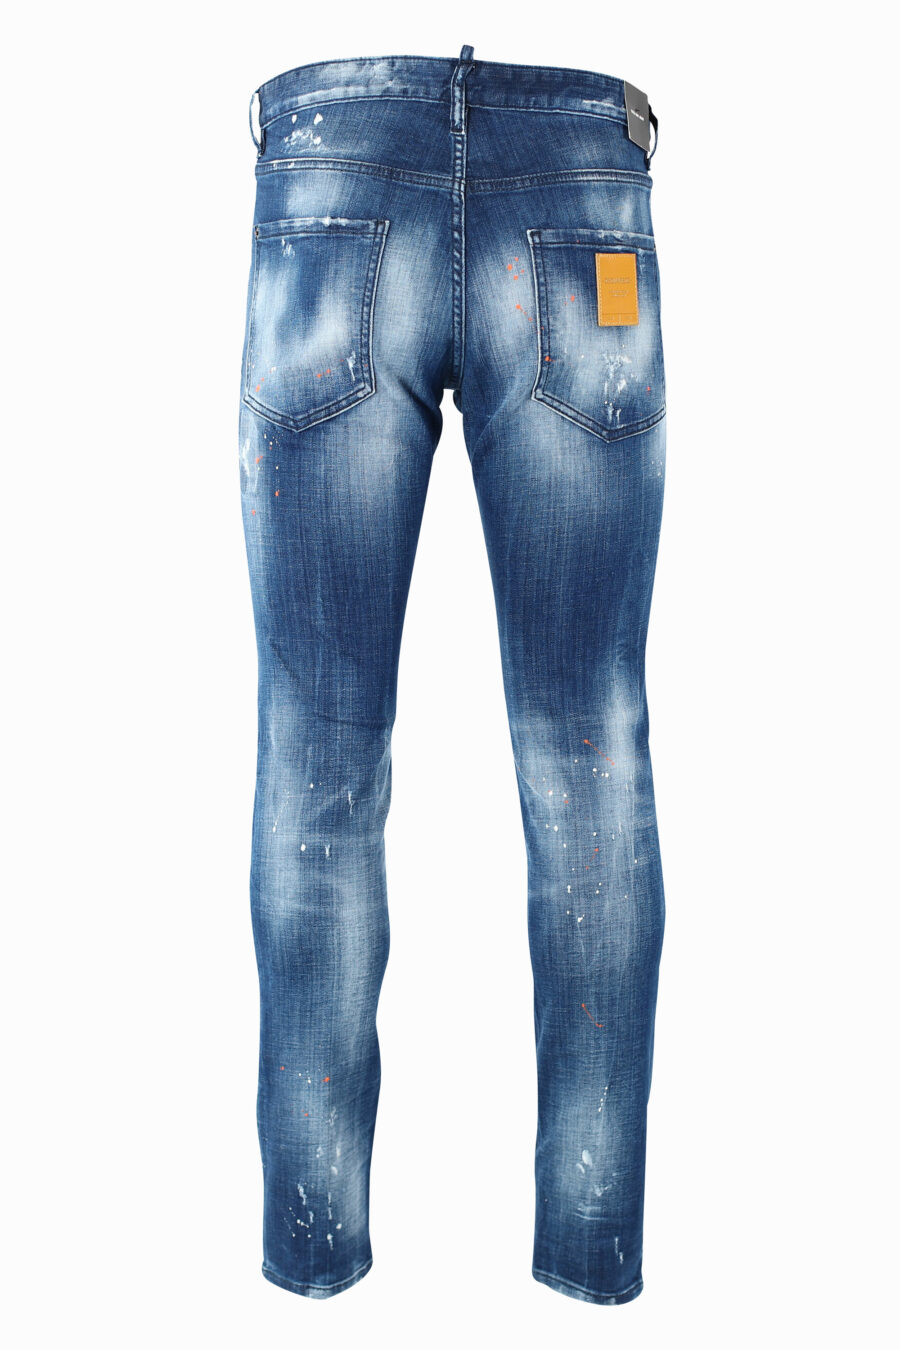 Pantalón vaquero "Cool Guy" azul semidesgastado con semirotos - IMG 0971